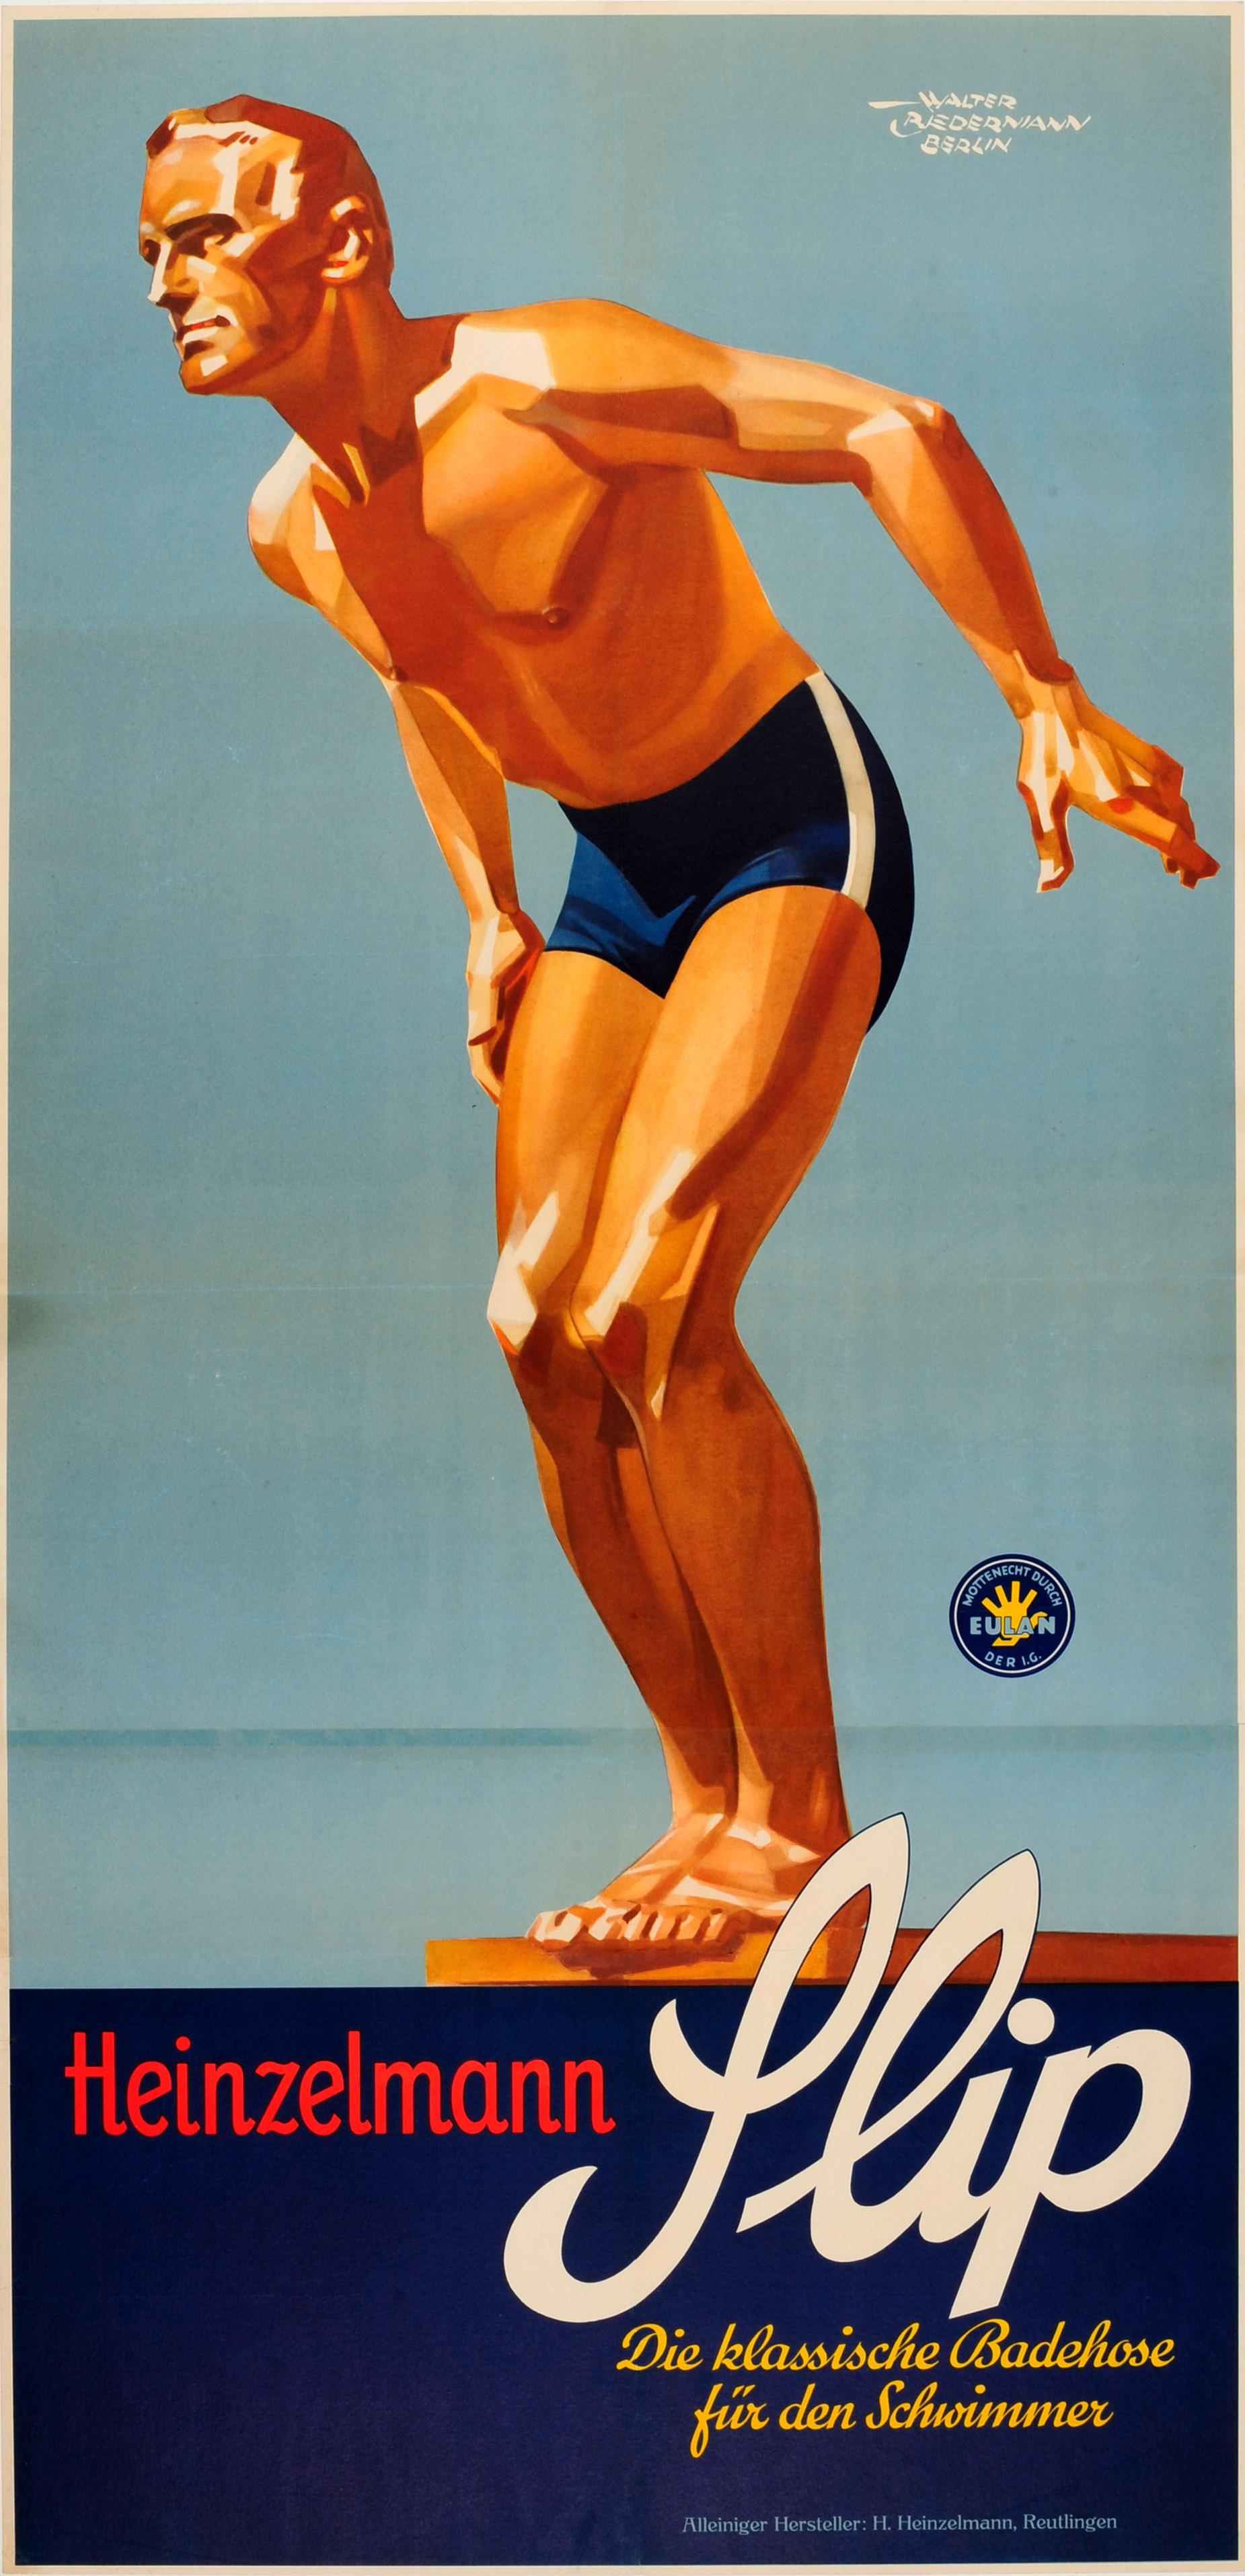 Walter Biedermann Print - Original Vintage Sport Fashion Poster For Slip Badehose Swimming Trunks Ft Diver